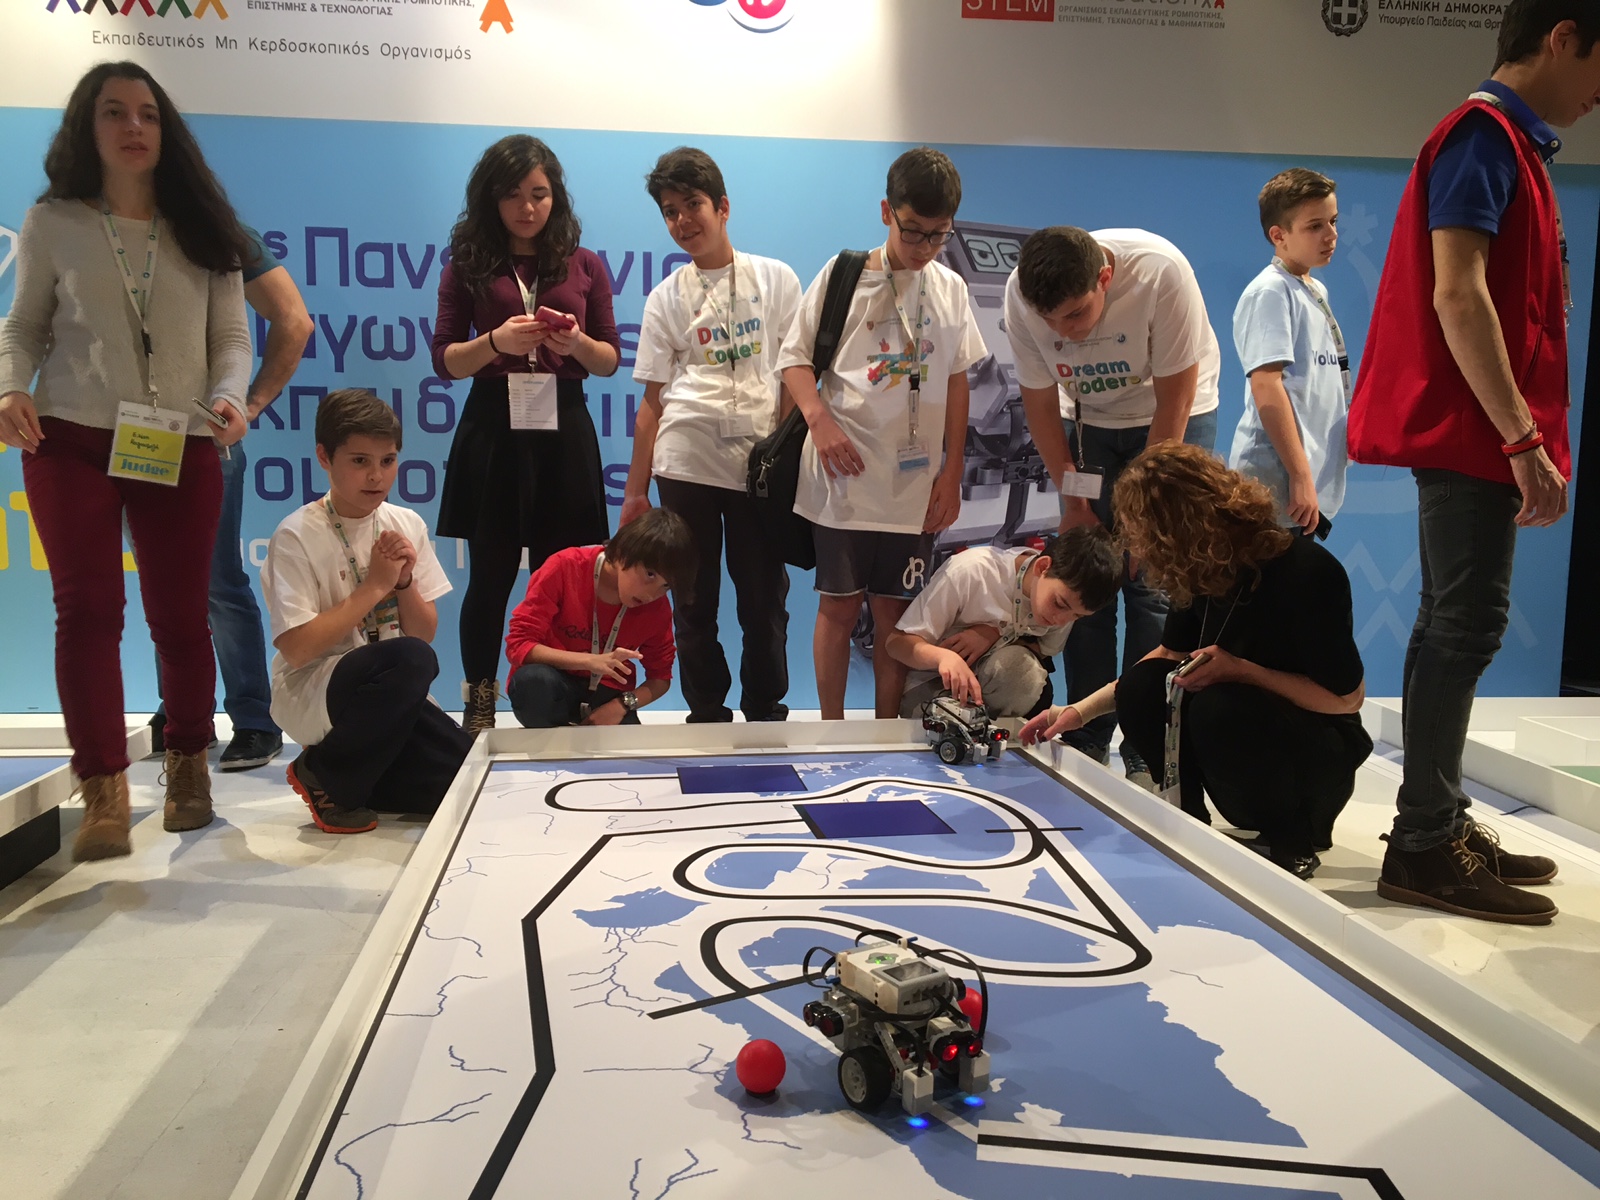 Πρώτοι στην Αττική στον Πανελλήνιο Διαγωνισμό Ρομποτικής | 2.4.2016